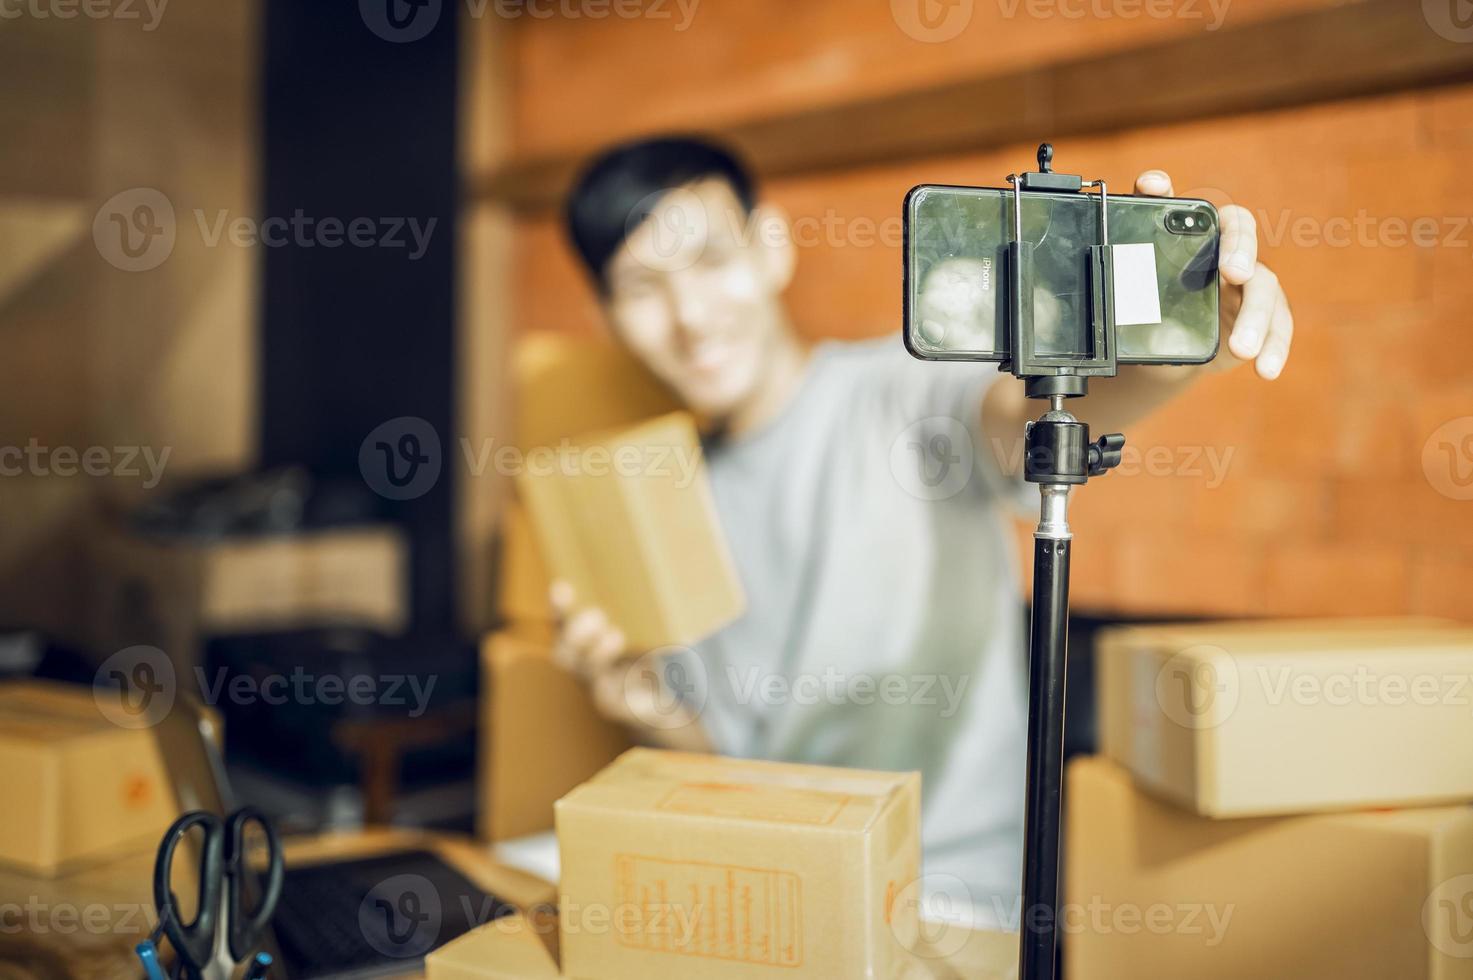 ett asiatisk man användningar en mobil telefon till ta order och visa objekt i en låda den där uppgifter leva strömning video uppkopplad på de Lagra. små företag ägare asiatisk uppkopplad marknadsföra leverans begrepp foto